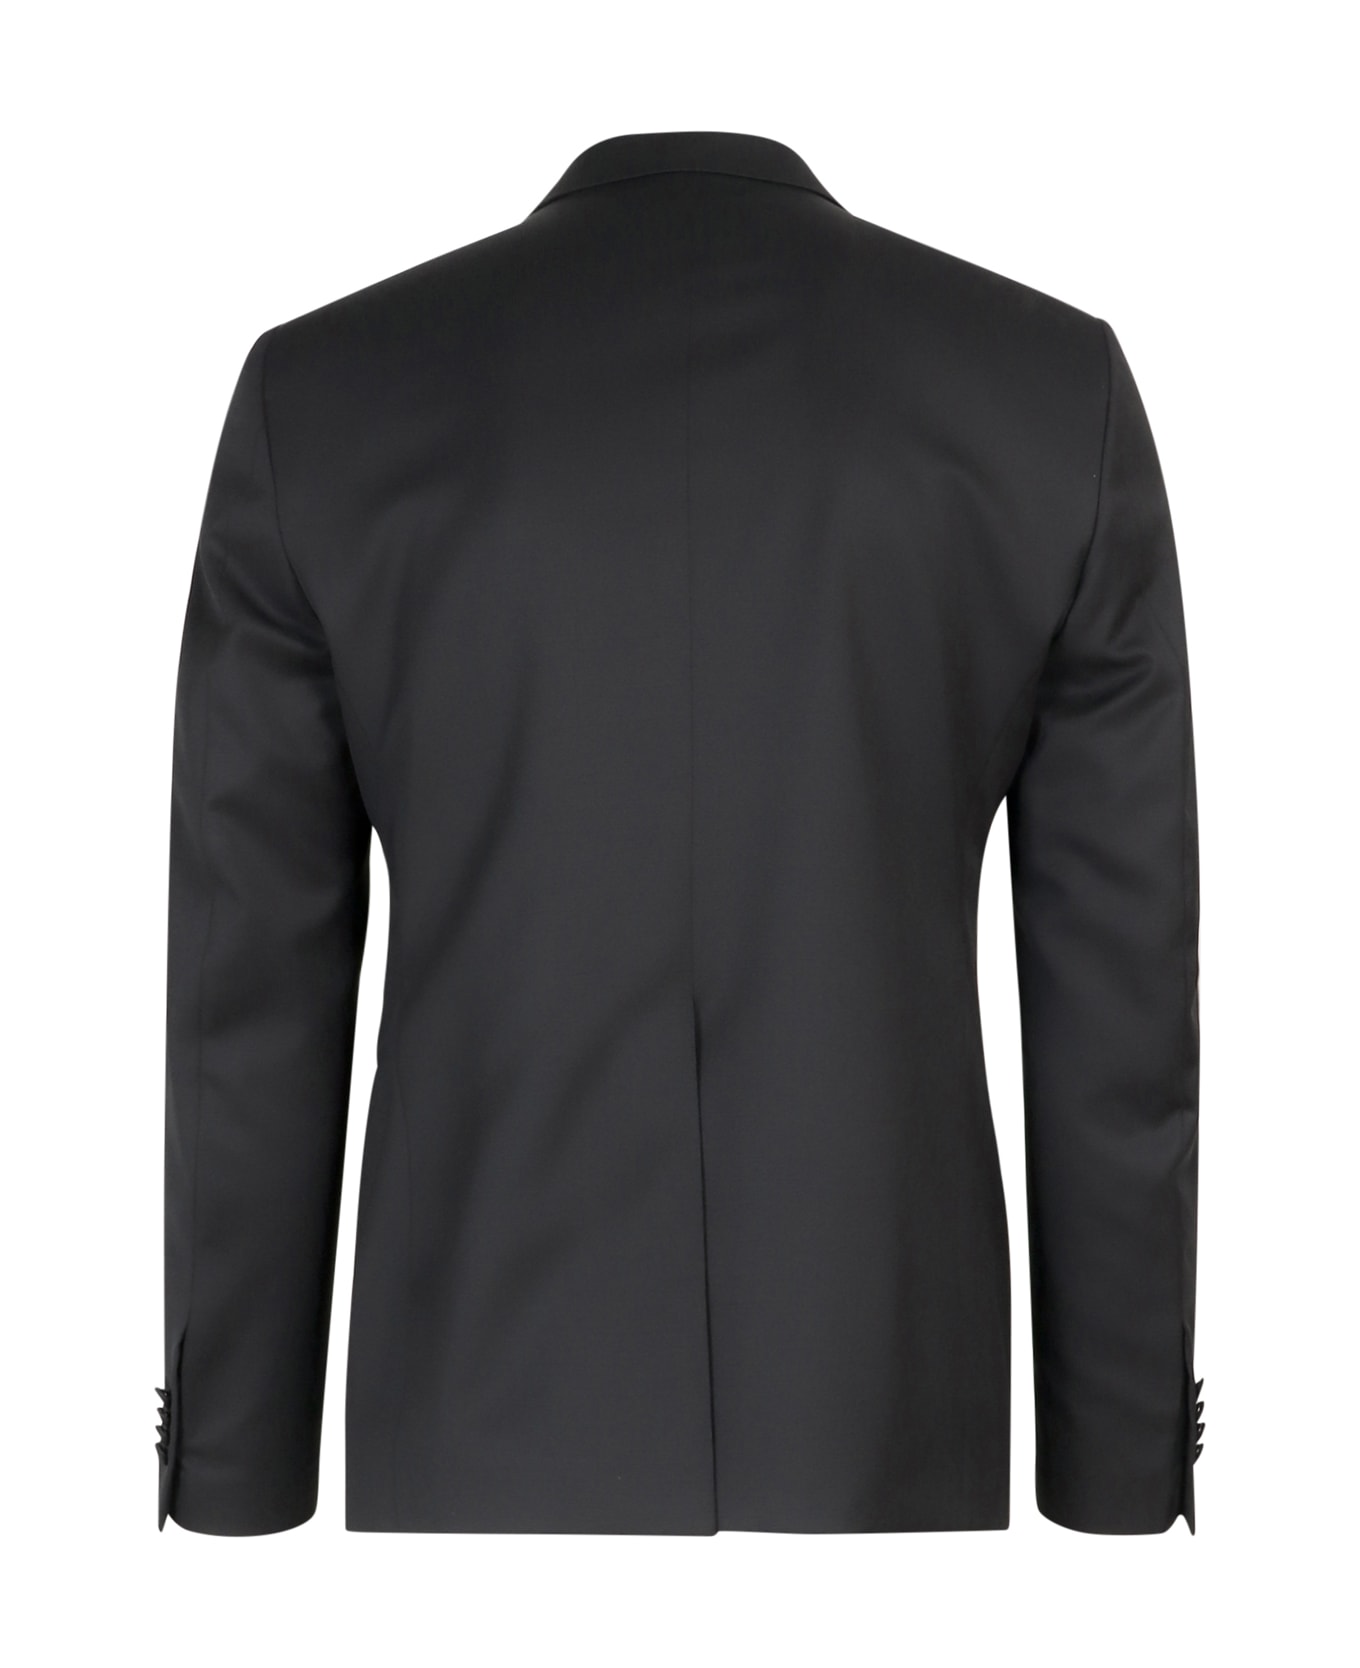 Tagliatore Suit - Black スーツ